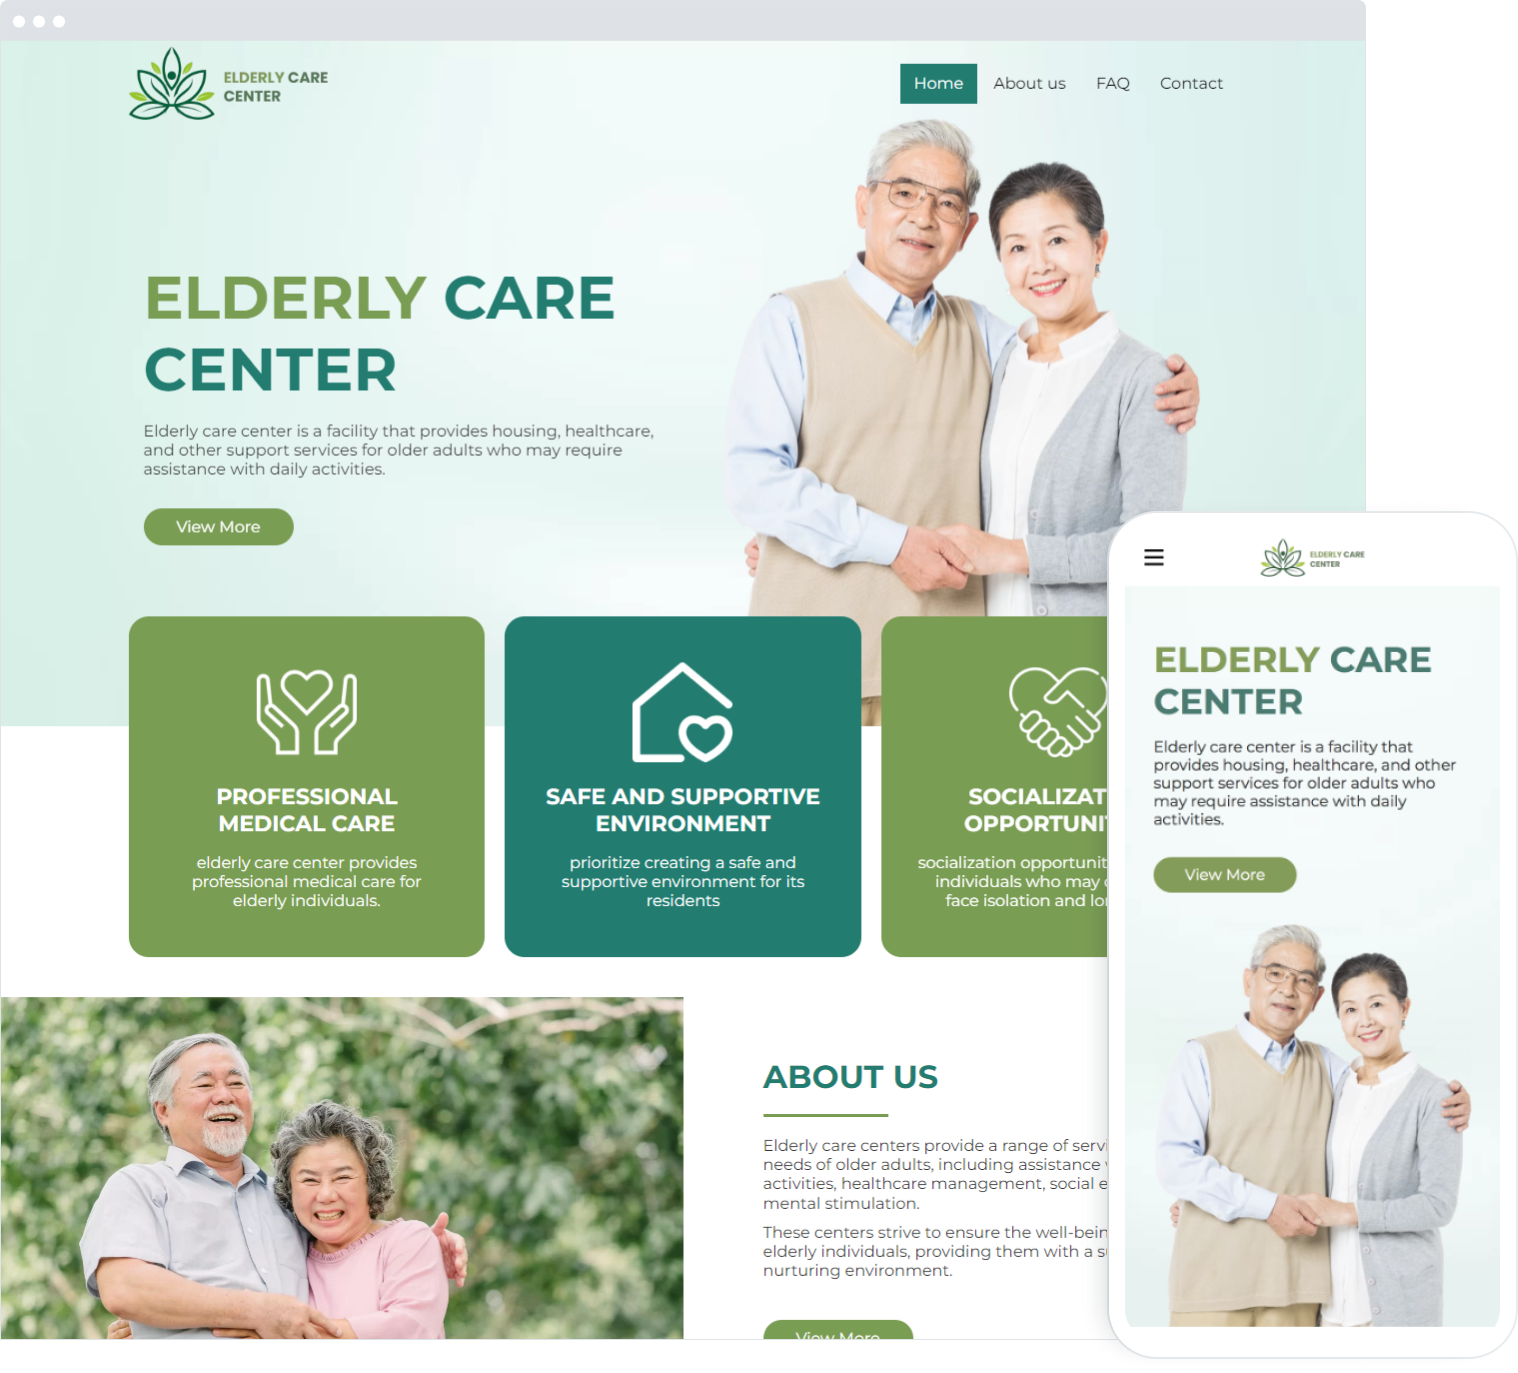  Elderly care center